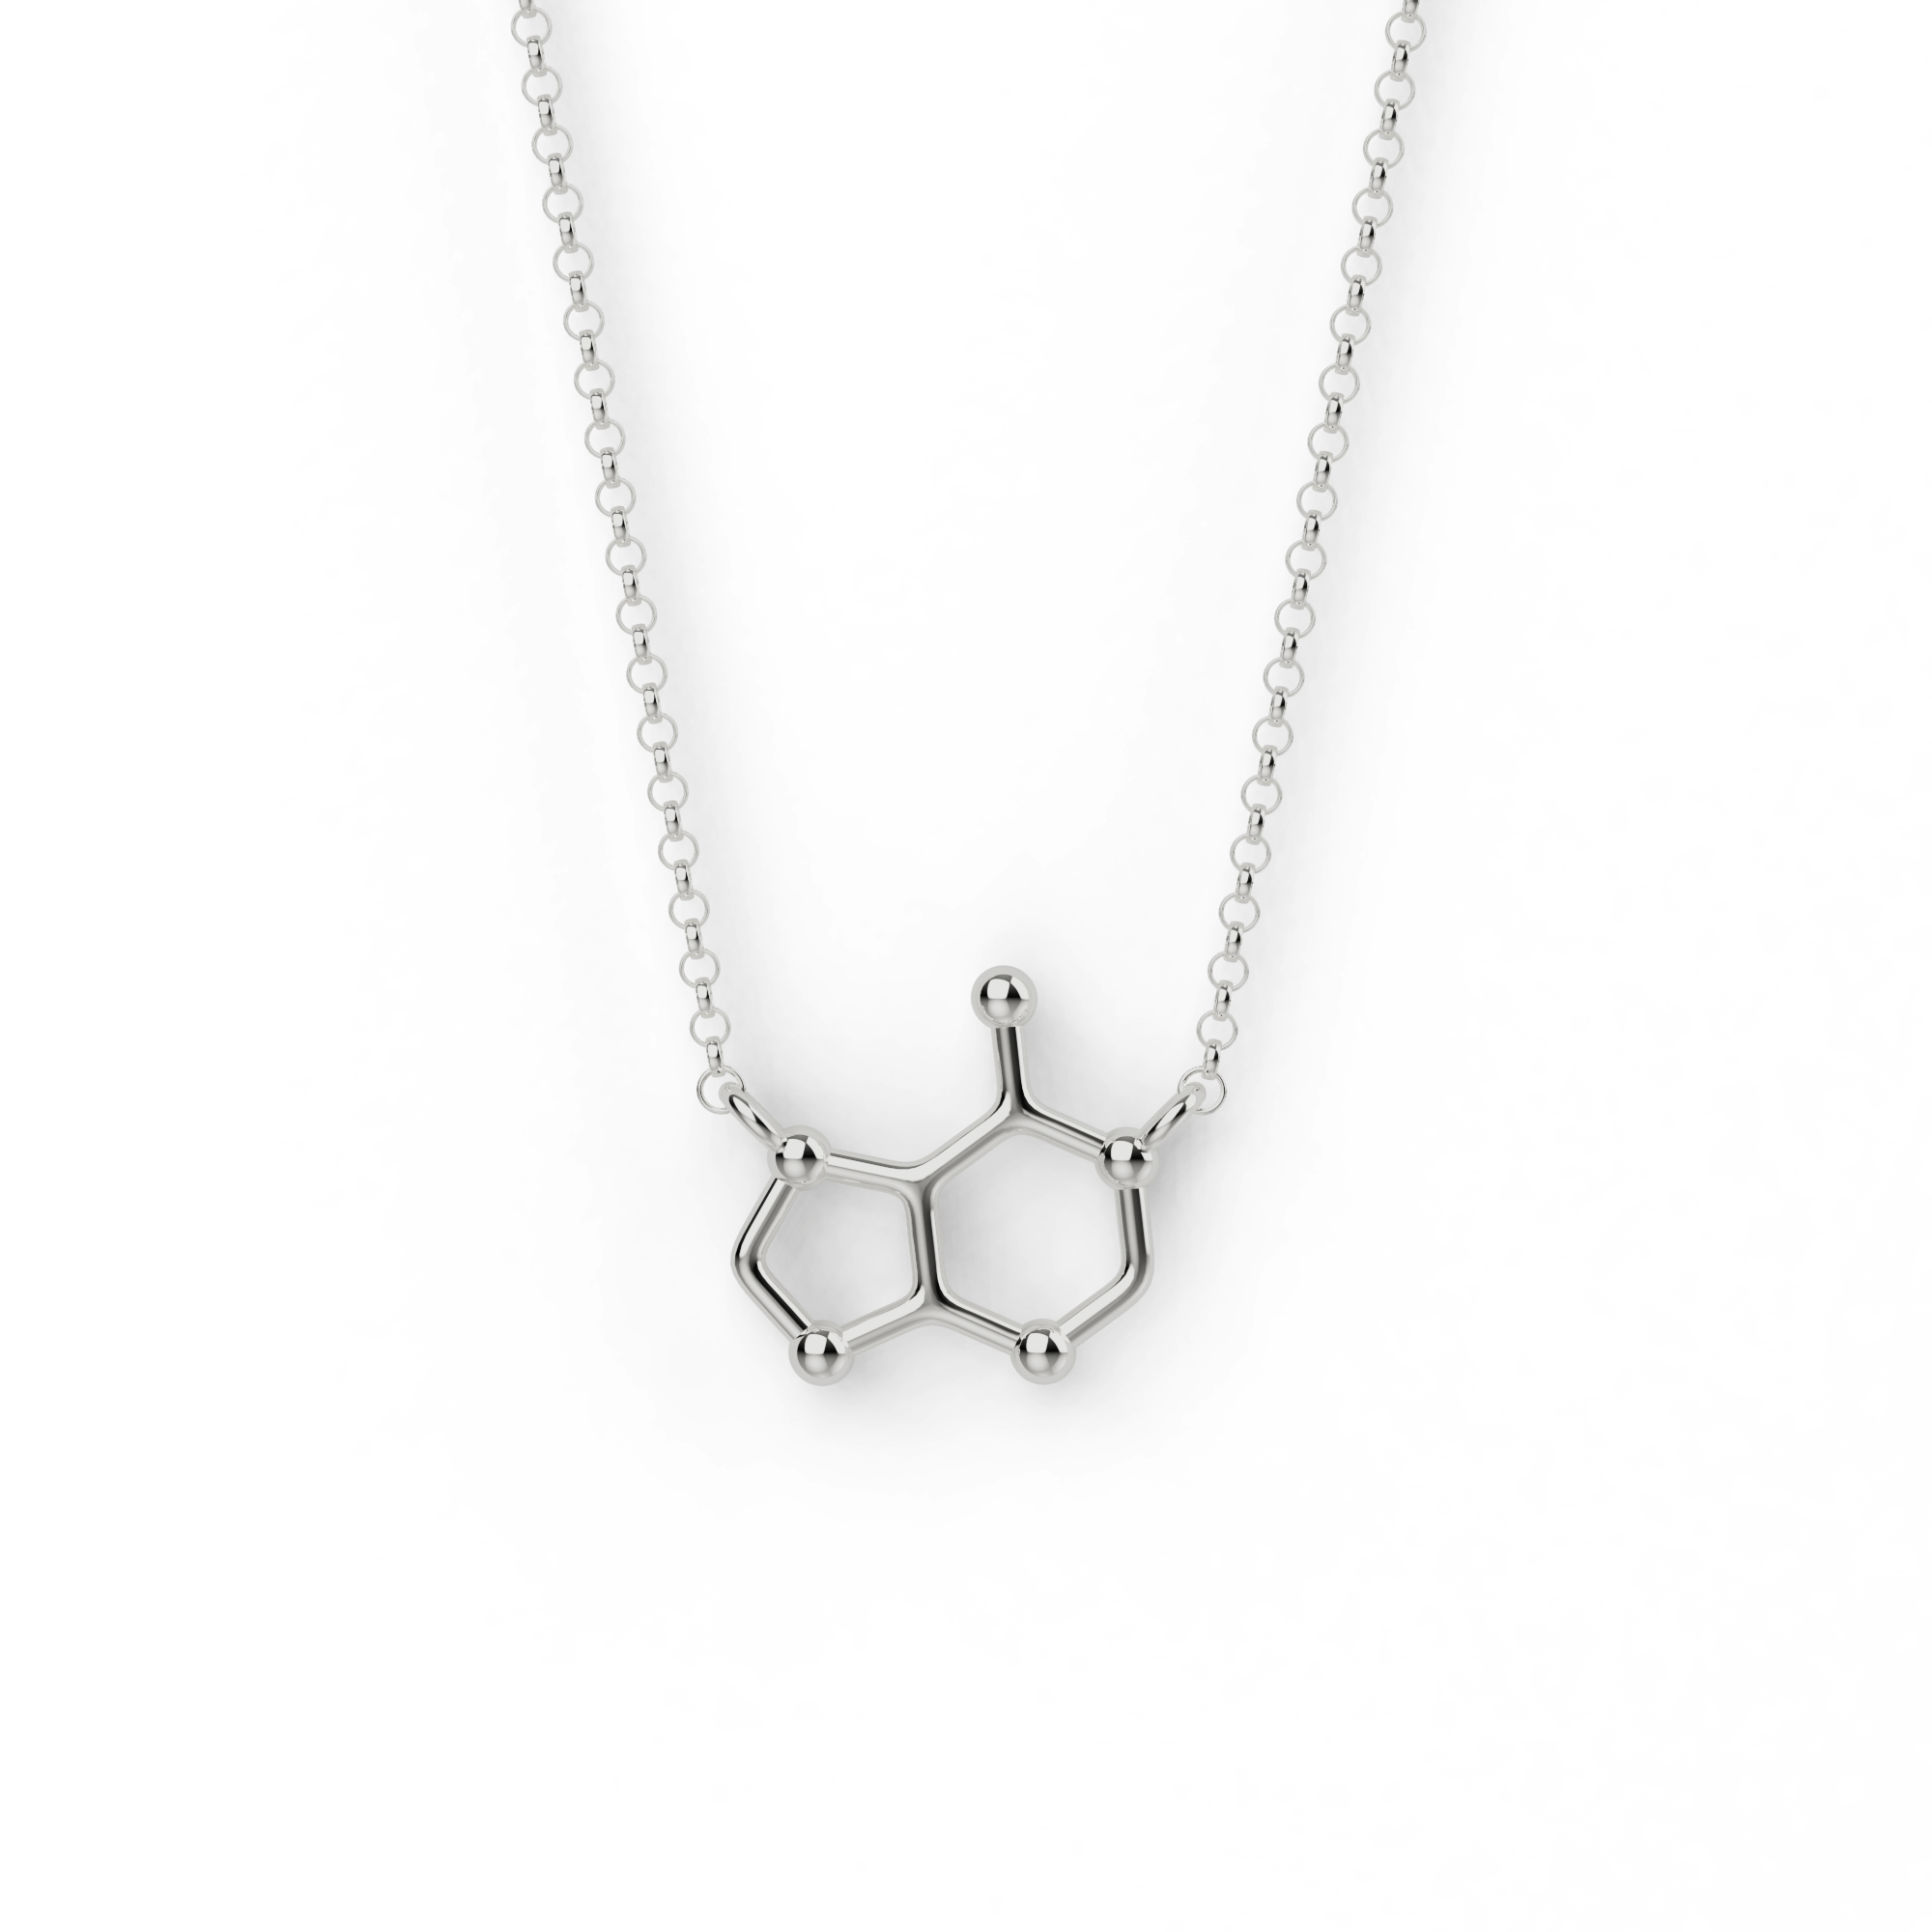 adenine necklace | silver